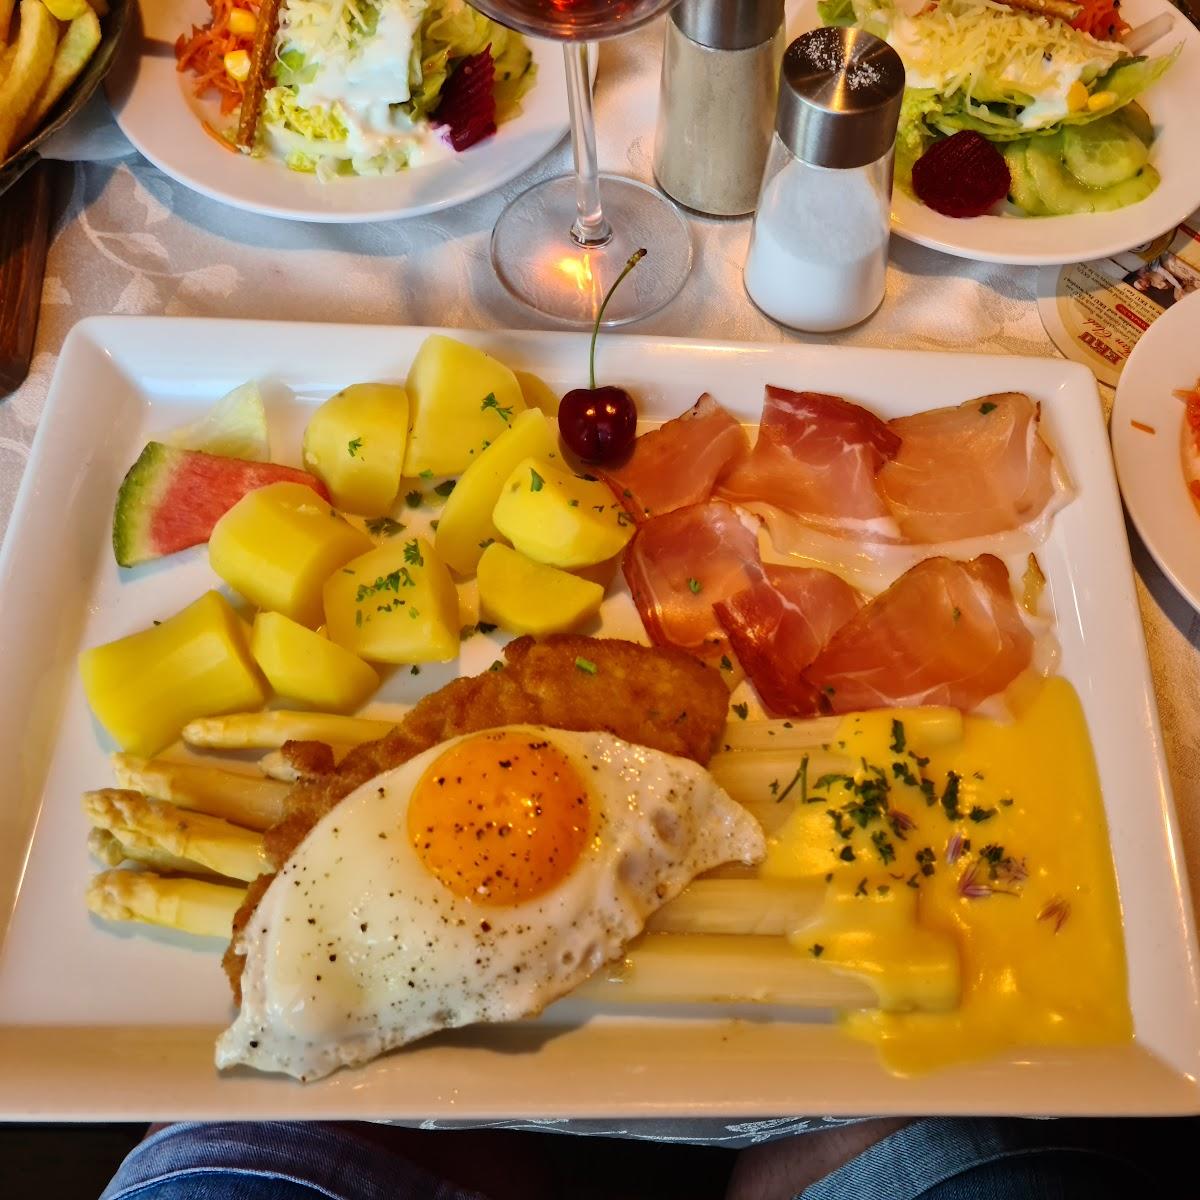 Restaurant "Gasthof Waldfrieden" in Kemnath